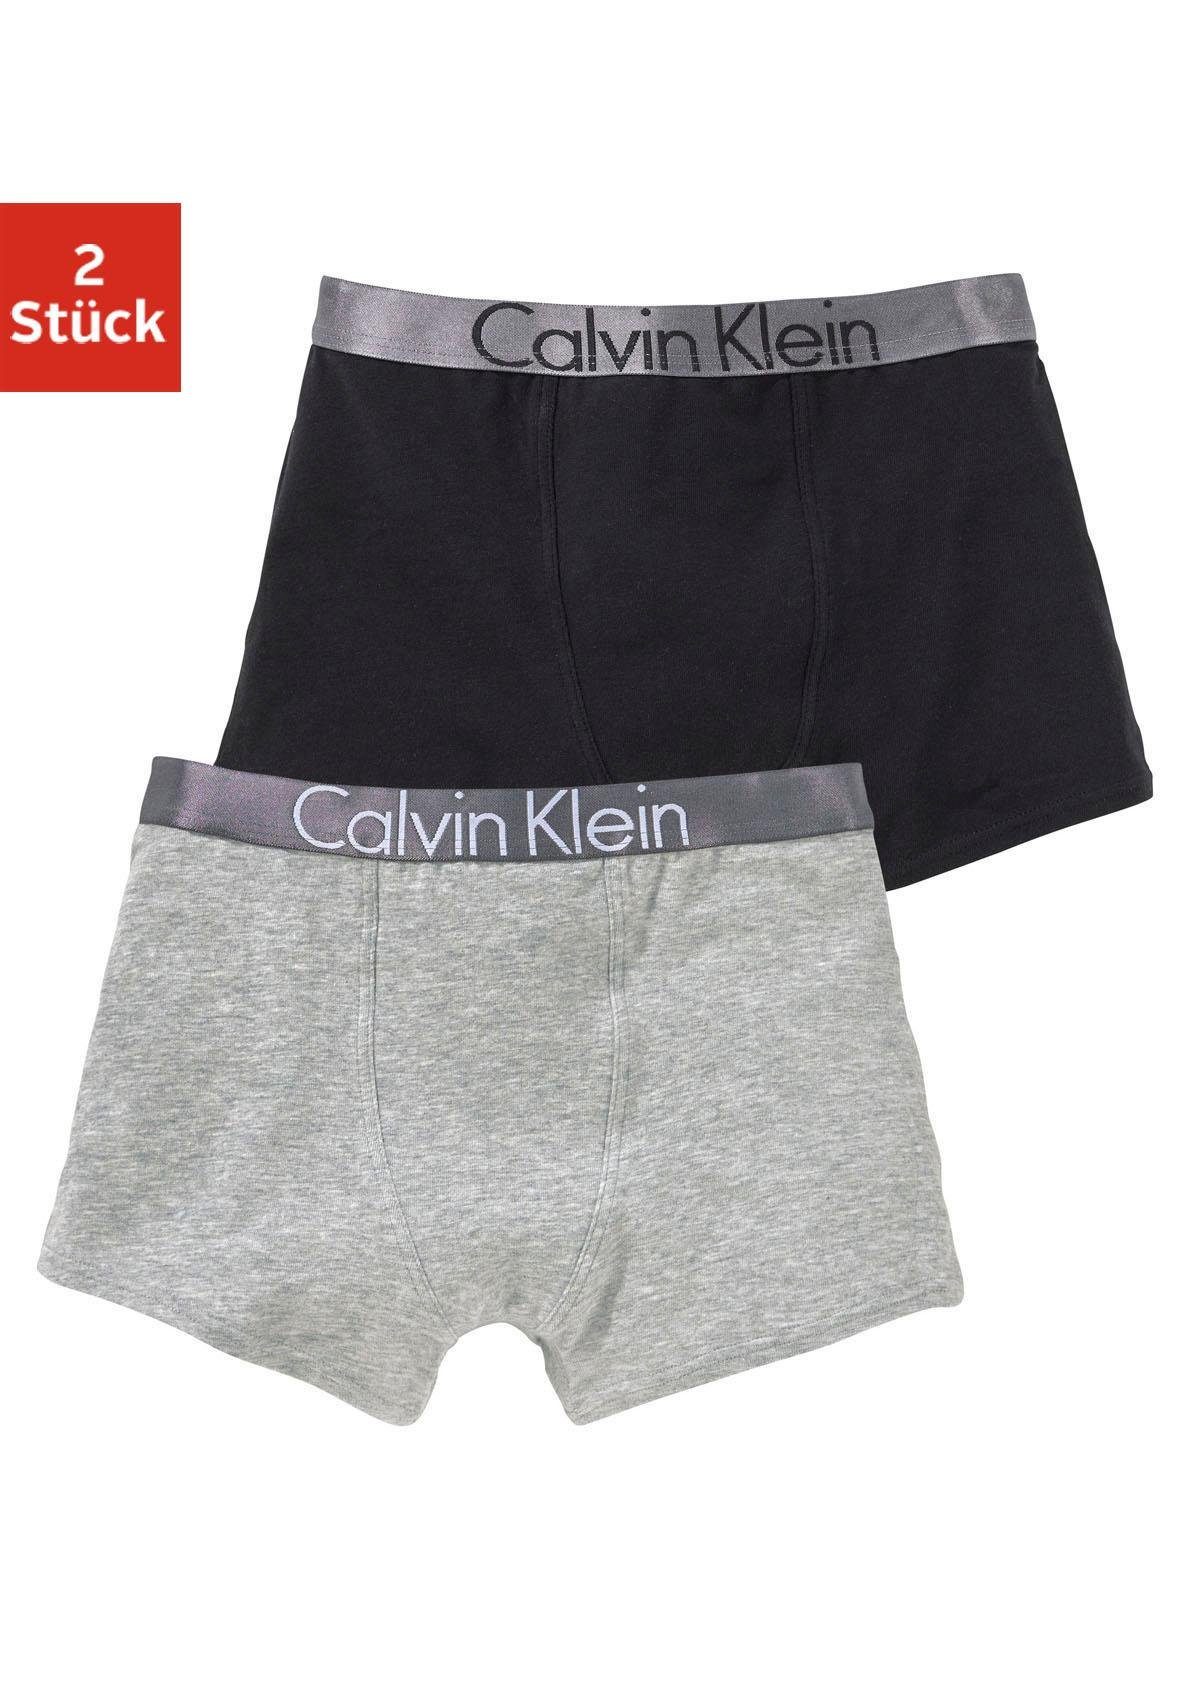 Calvin Klein NU 15% KORTING: Calvin Klein jongensboxershort (set van 2)